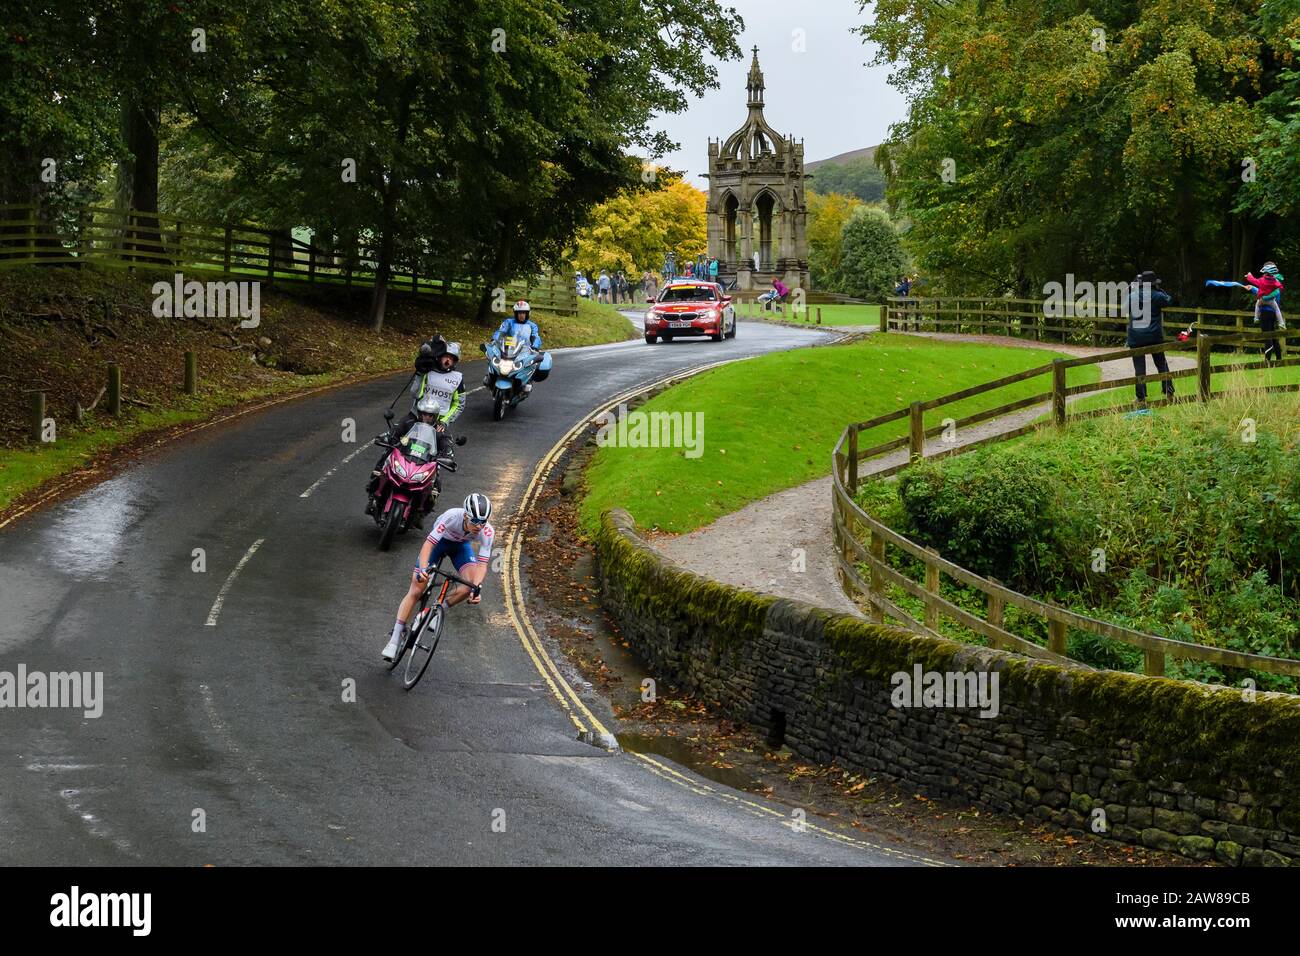 Cycliste britannique junior masculin de course sur route, vélo d'équitation, compétition en course à vélo, équipe de caméras tv suivant - Championnat du monde UCI, Bolton Abbey, Royaume-Uni Banque D'Images